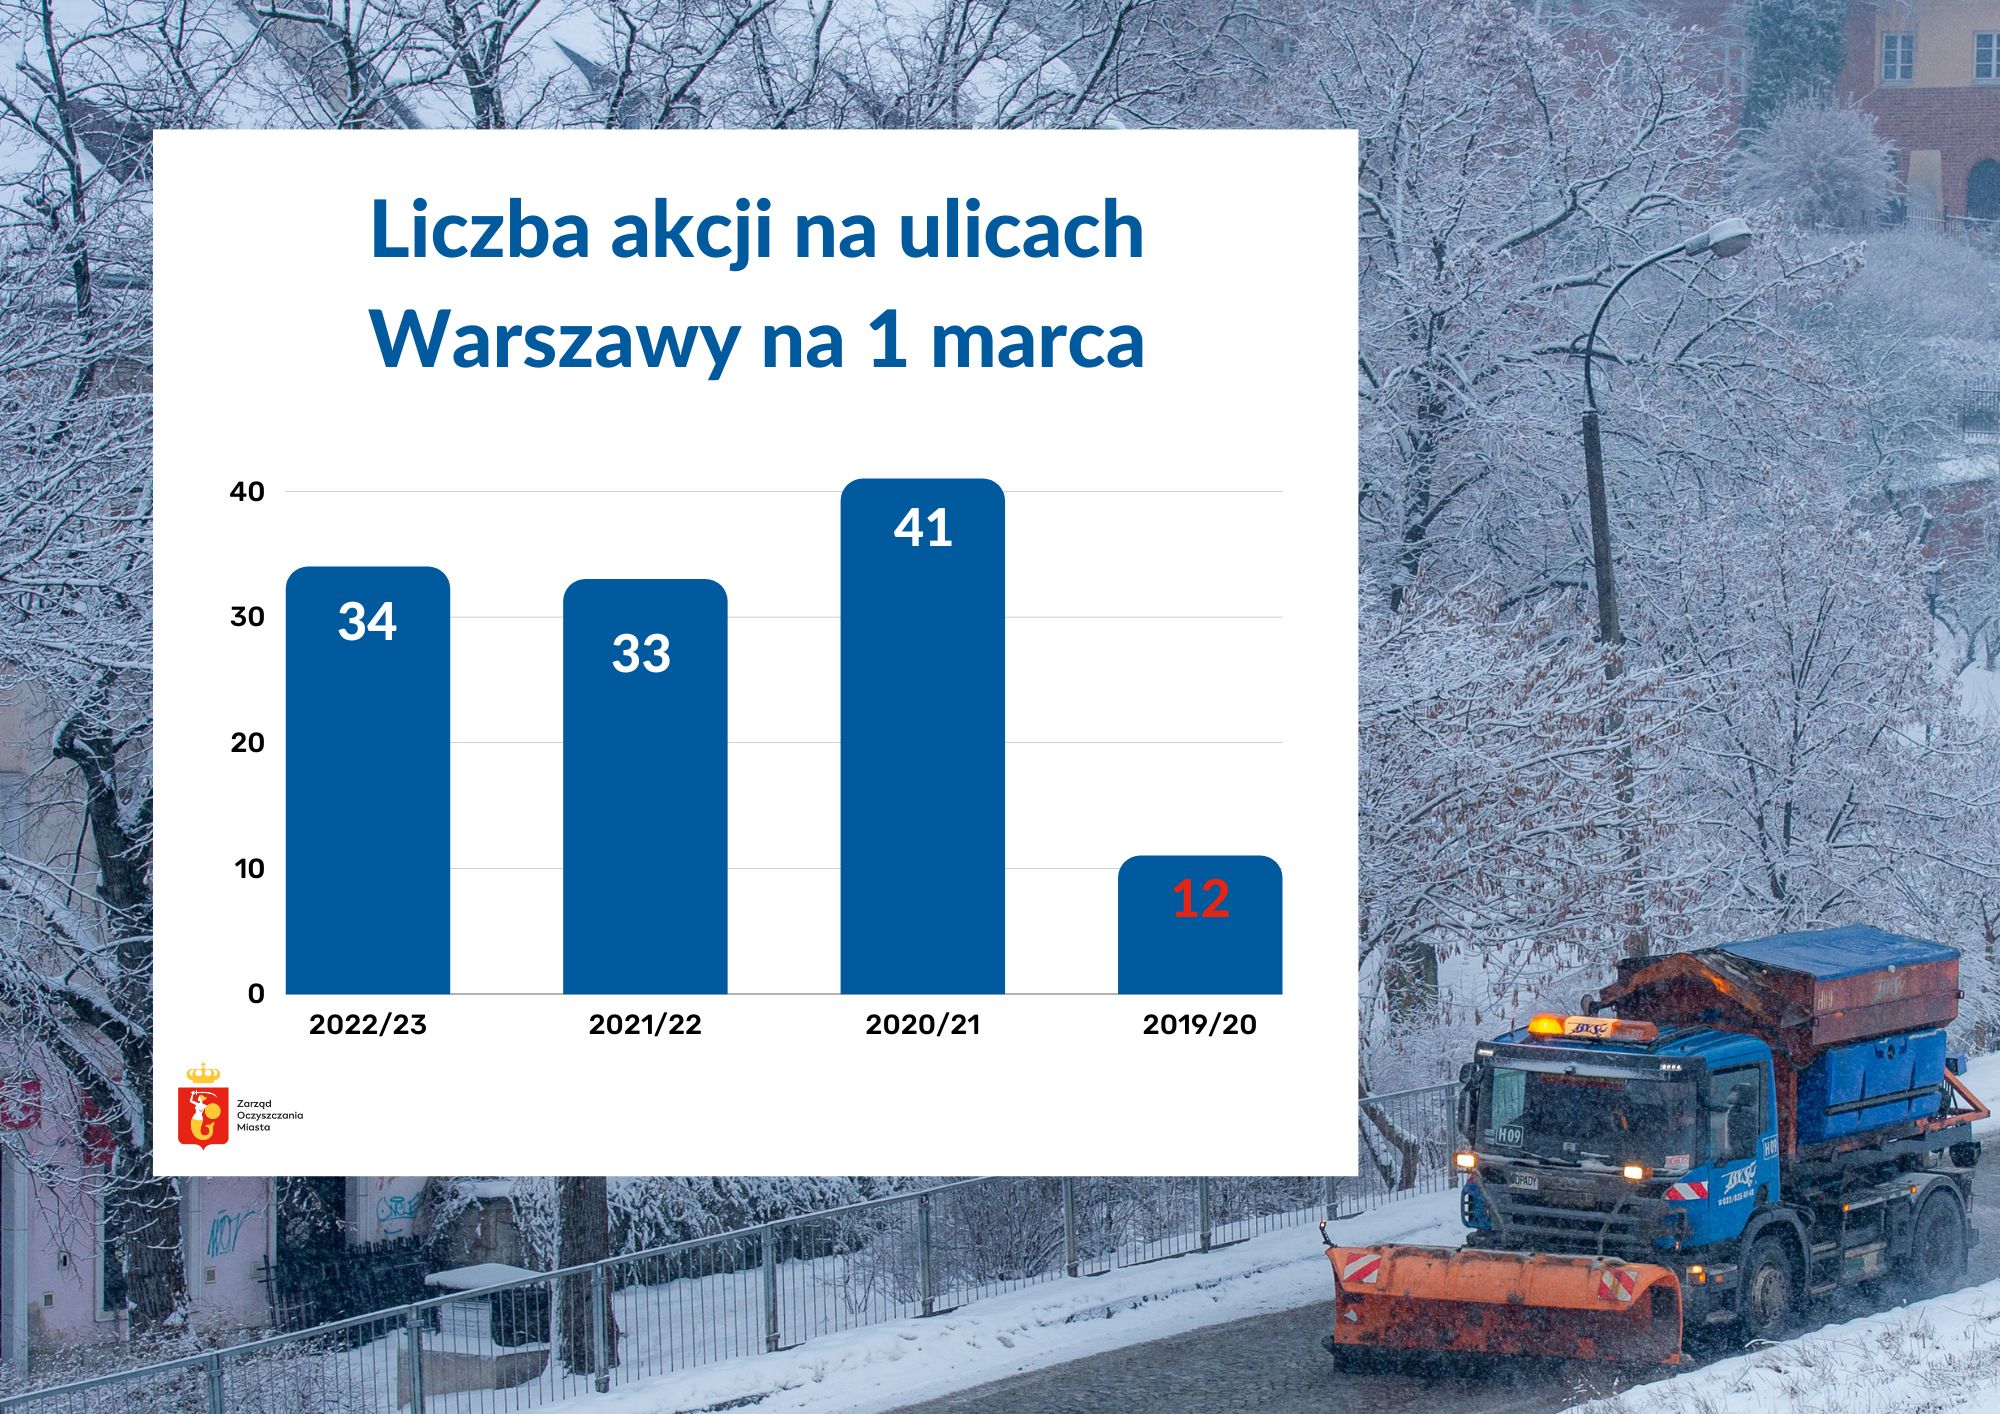 Wykres, który przedstawia liczbę akcji posypywarek na ulicach Warszawy na 1 marca: sezon 2022/23 - 34 akcje, sezon 2021/22 - 33 akce, sezon 2020/21 - 41 akcji, sezon 2019/20 - 12 akcji.